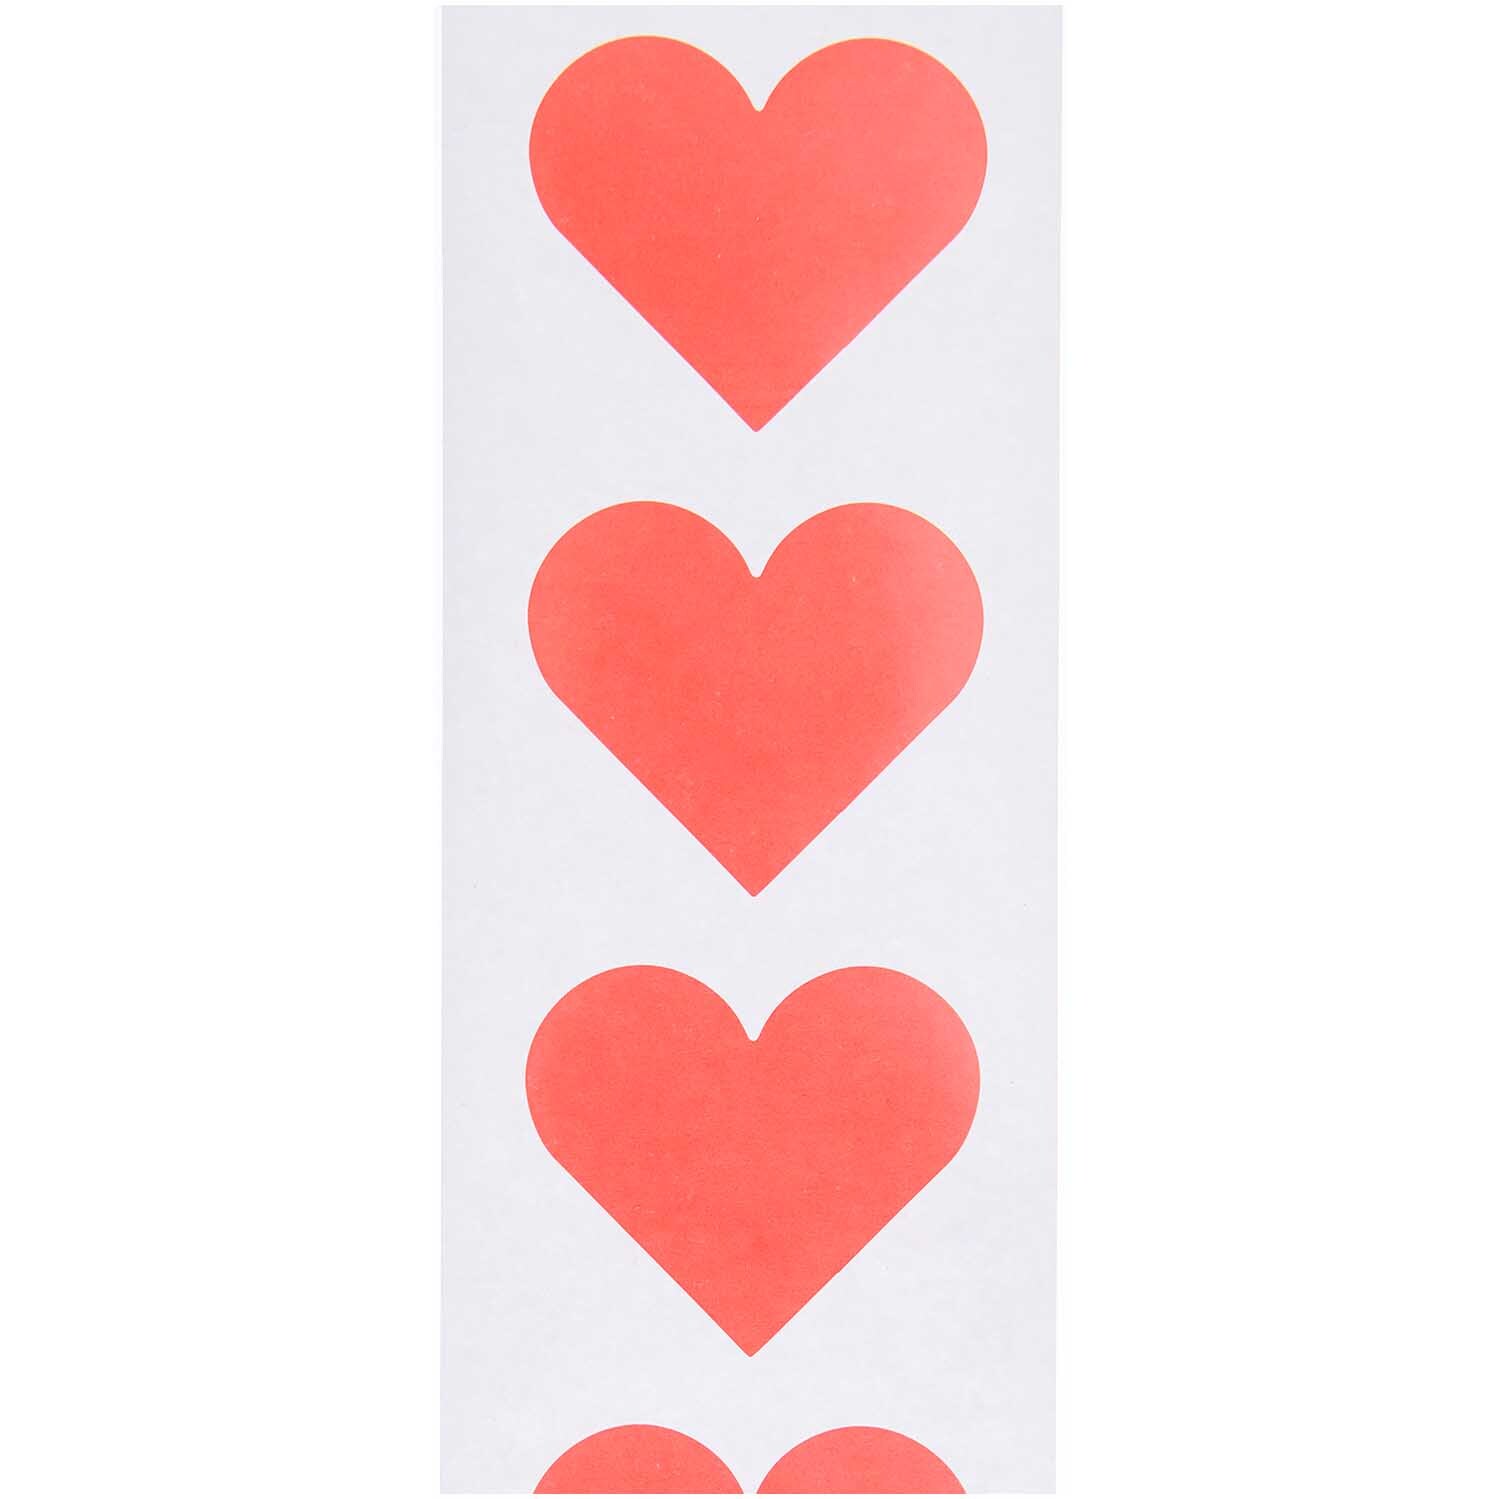 Paper Poetry Sticker Herzen 5cm 120 Stück auf der Rolle